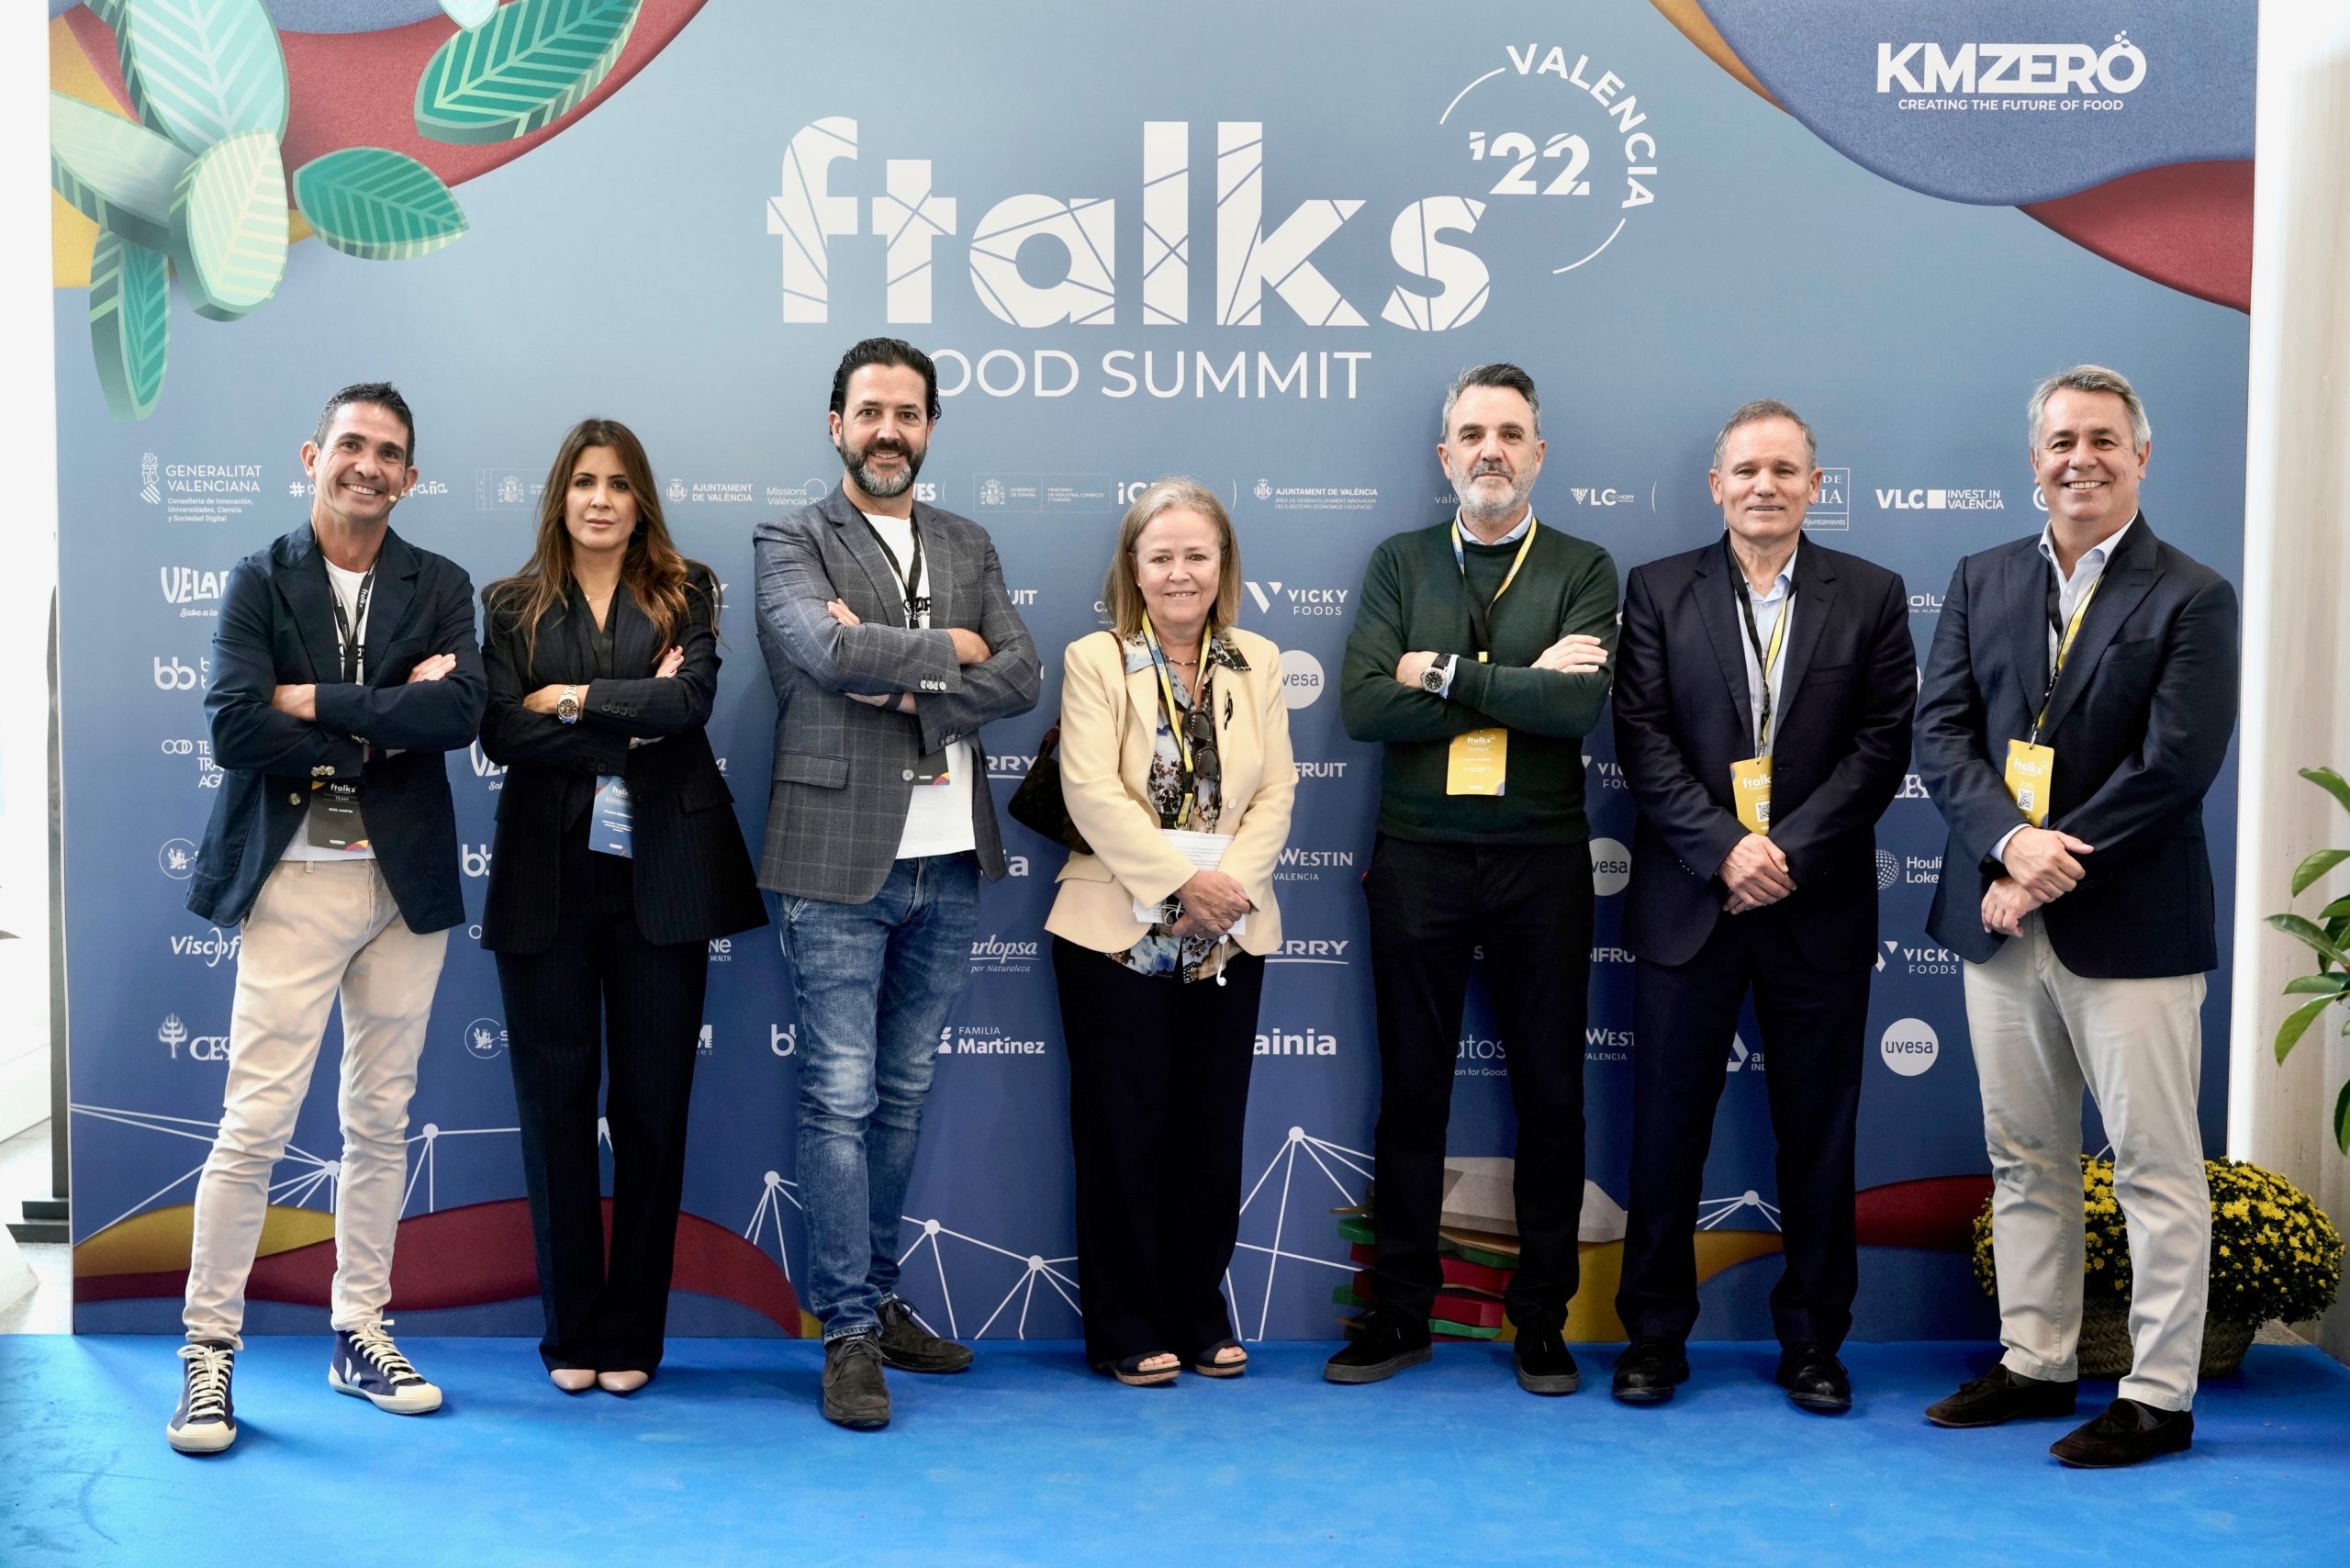 Fundación LAB Mediterráneo pone en valor los beneficios de la cooperación entre empresas en ftalks Food Summit